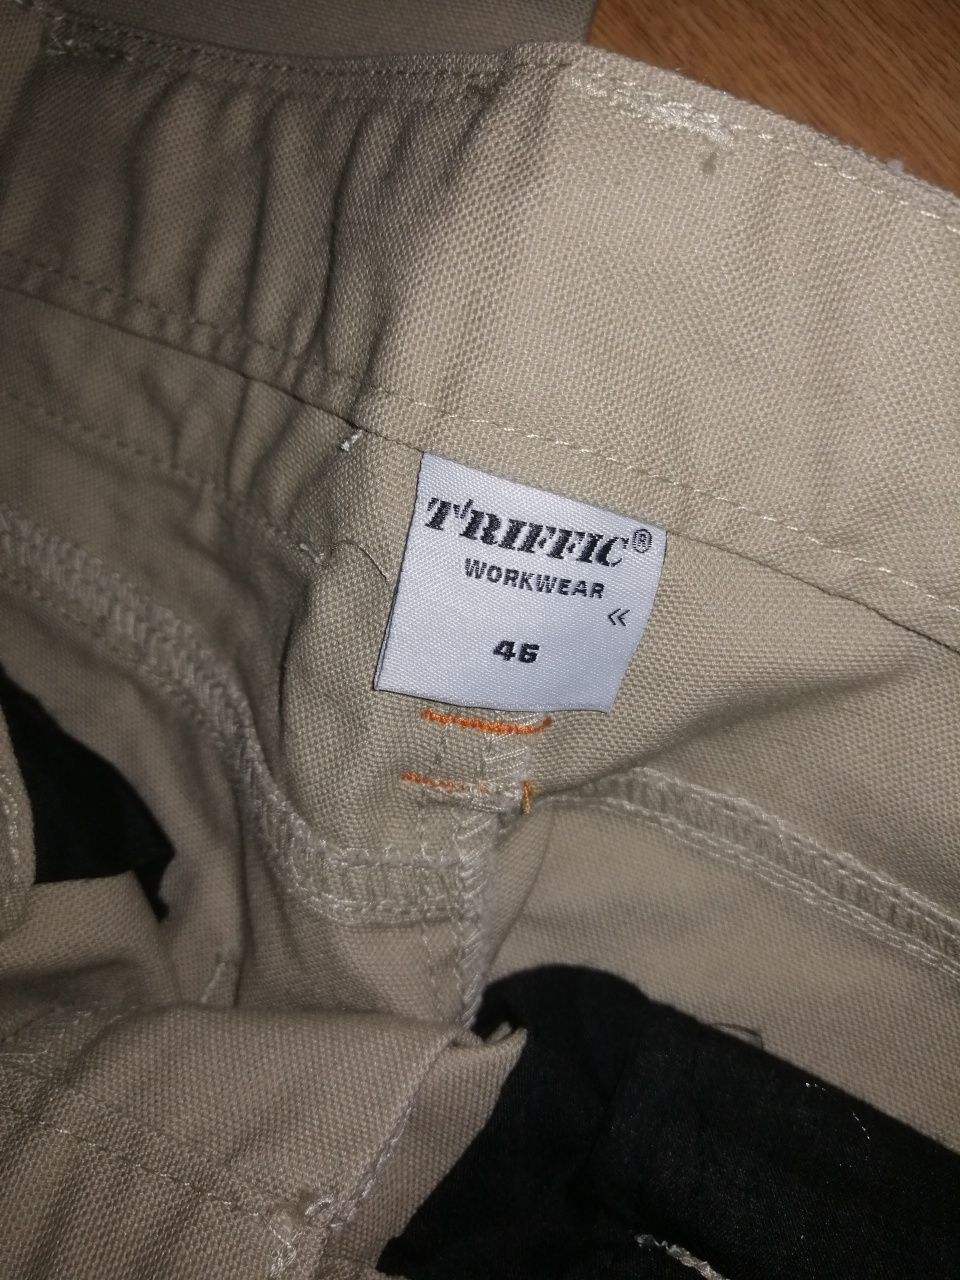 Pantaloni/salopeta de lucru T'riffic marimea 46, 54